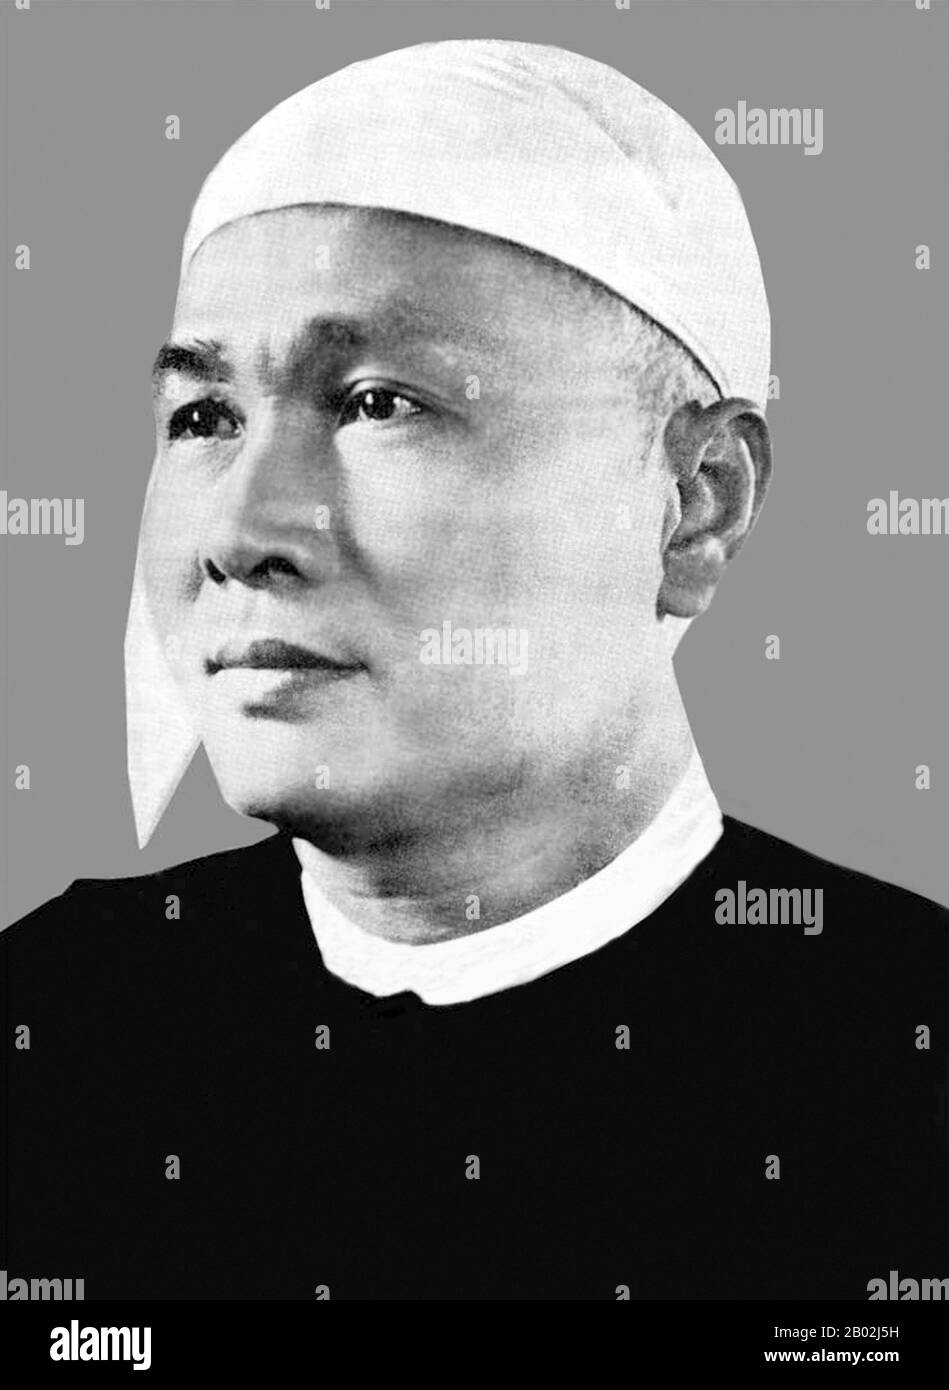 U Nu (auch Thakin Nu; 25. Mai 1907 - 14. Februar 1995) war eine führende nationalistische und politische Persönlichkeit des 20. Jahrhunderts in Birma. Er war der erste Premierminister Burmas gemäß der Verfassung der Union von 1947 vom 4. Januar 1948 bis 12. Juni 1956, erneut vom 28. Februar 1957 bis 28. Oktober 1958 und schließlich vom 4. April 1960 bis zum 2. März 1962. Stockfoto